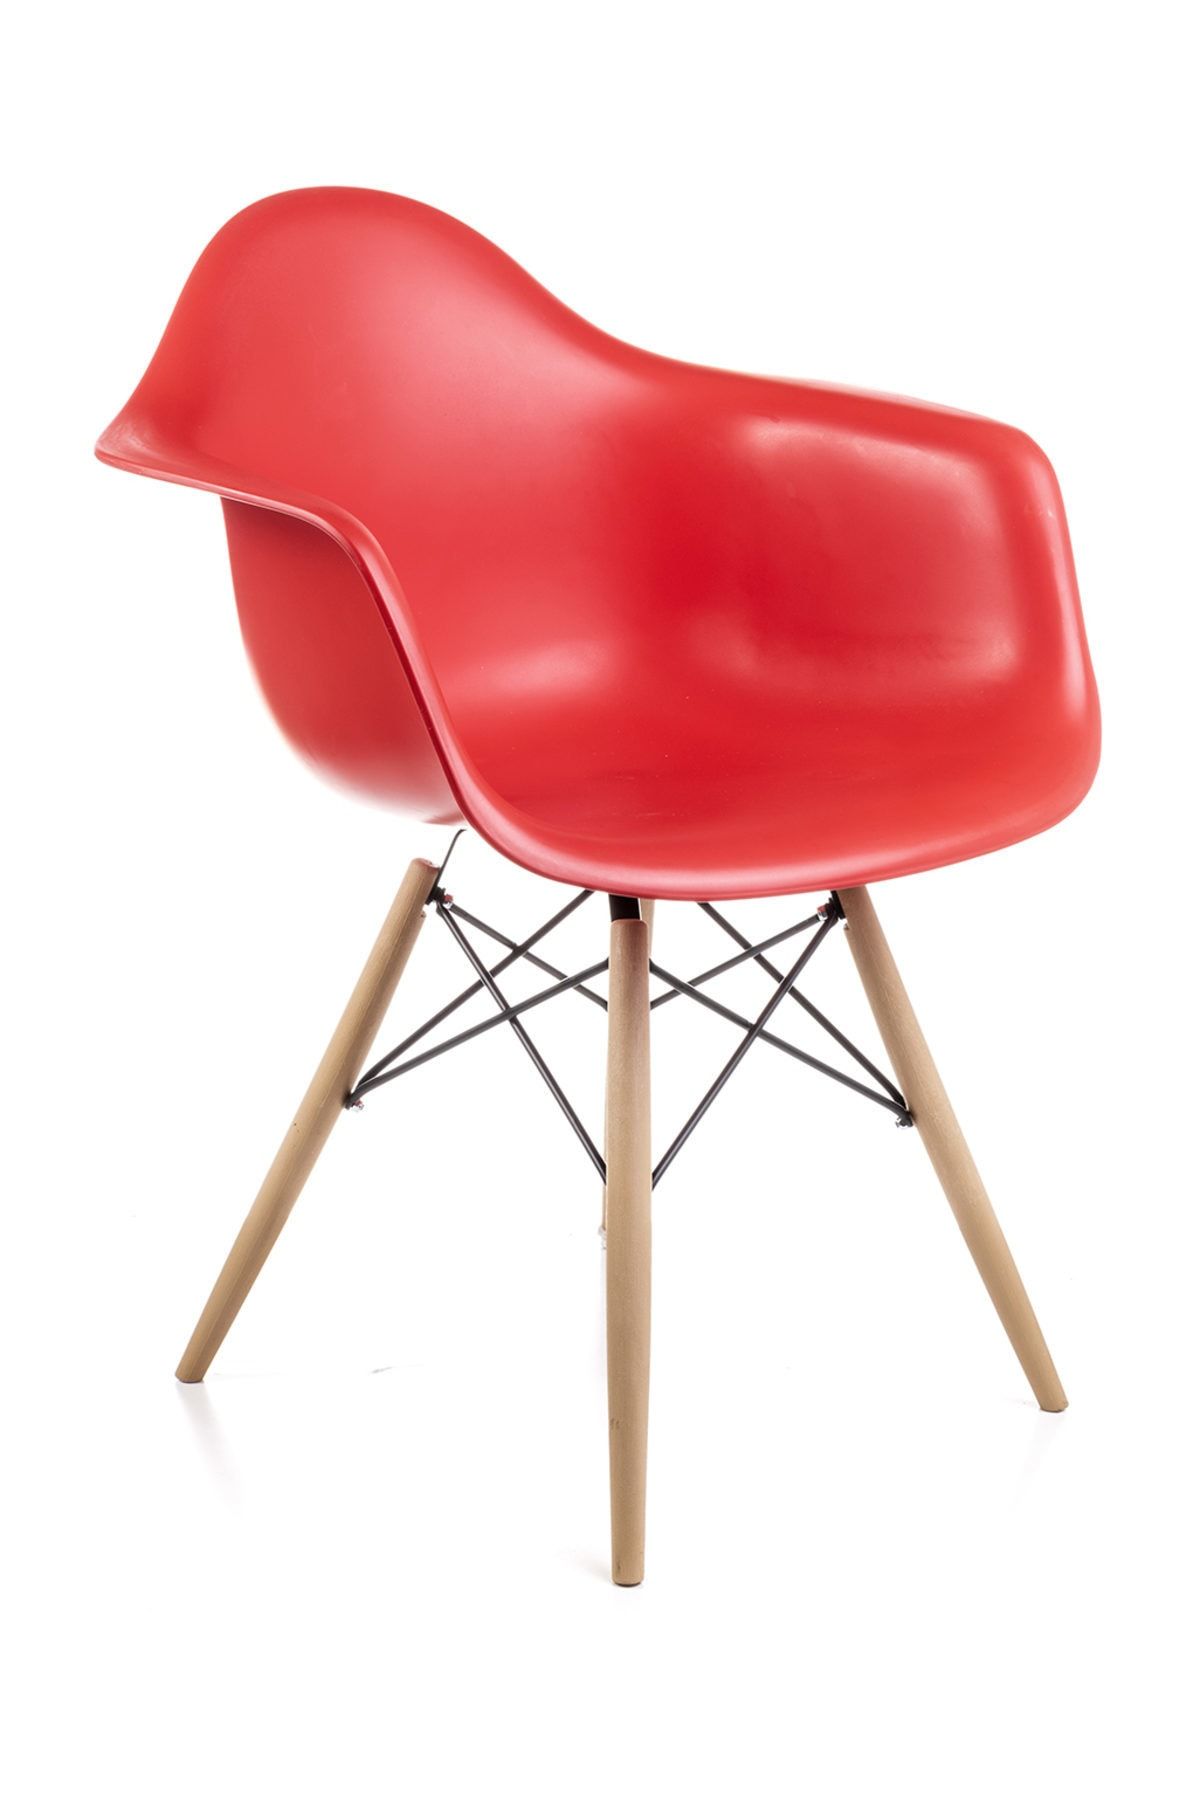 Dorcia Home Kolçaklı Kırmızı Eames Sandalye - Cafe Balkon Mutfak Sandalyesi